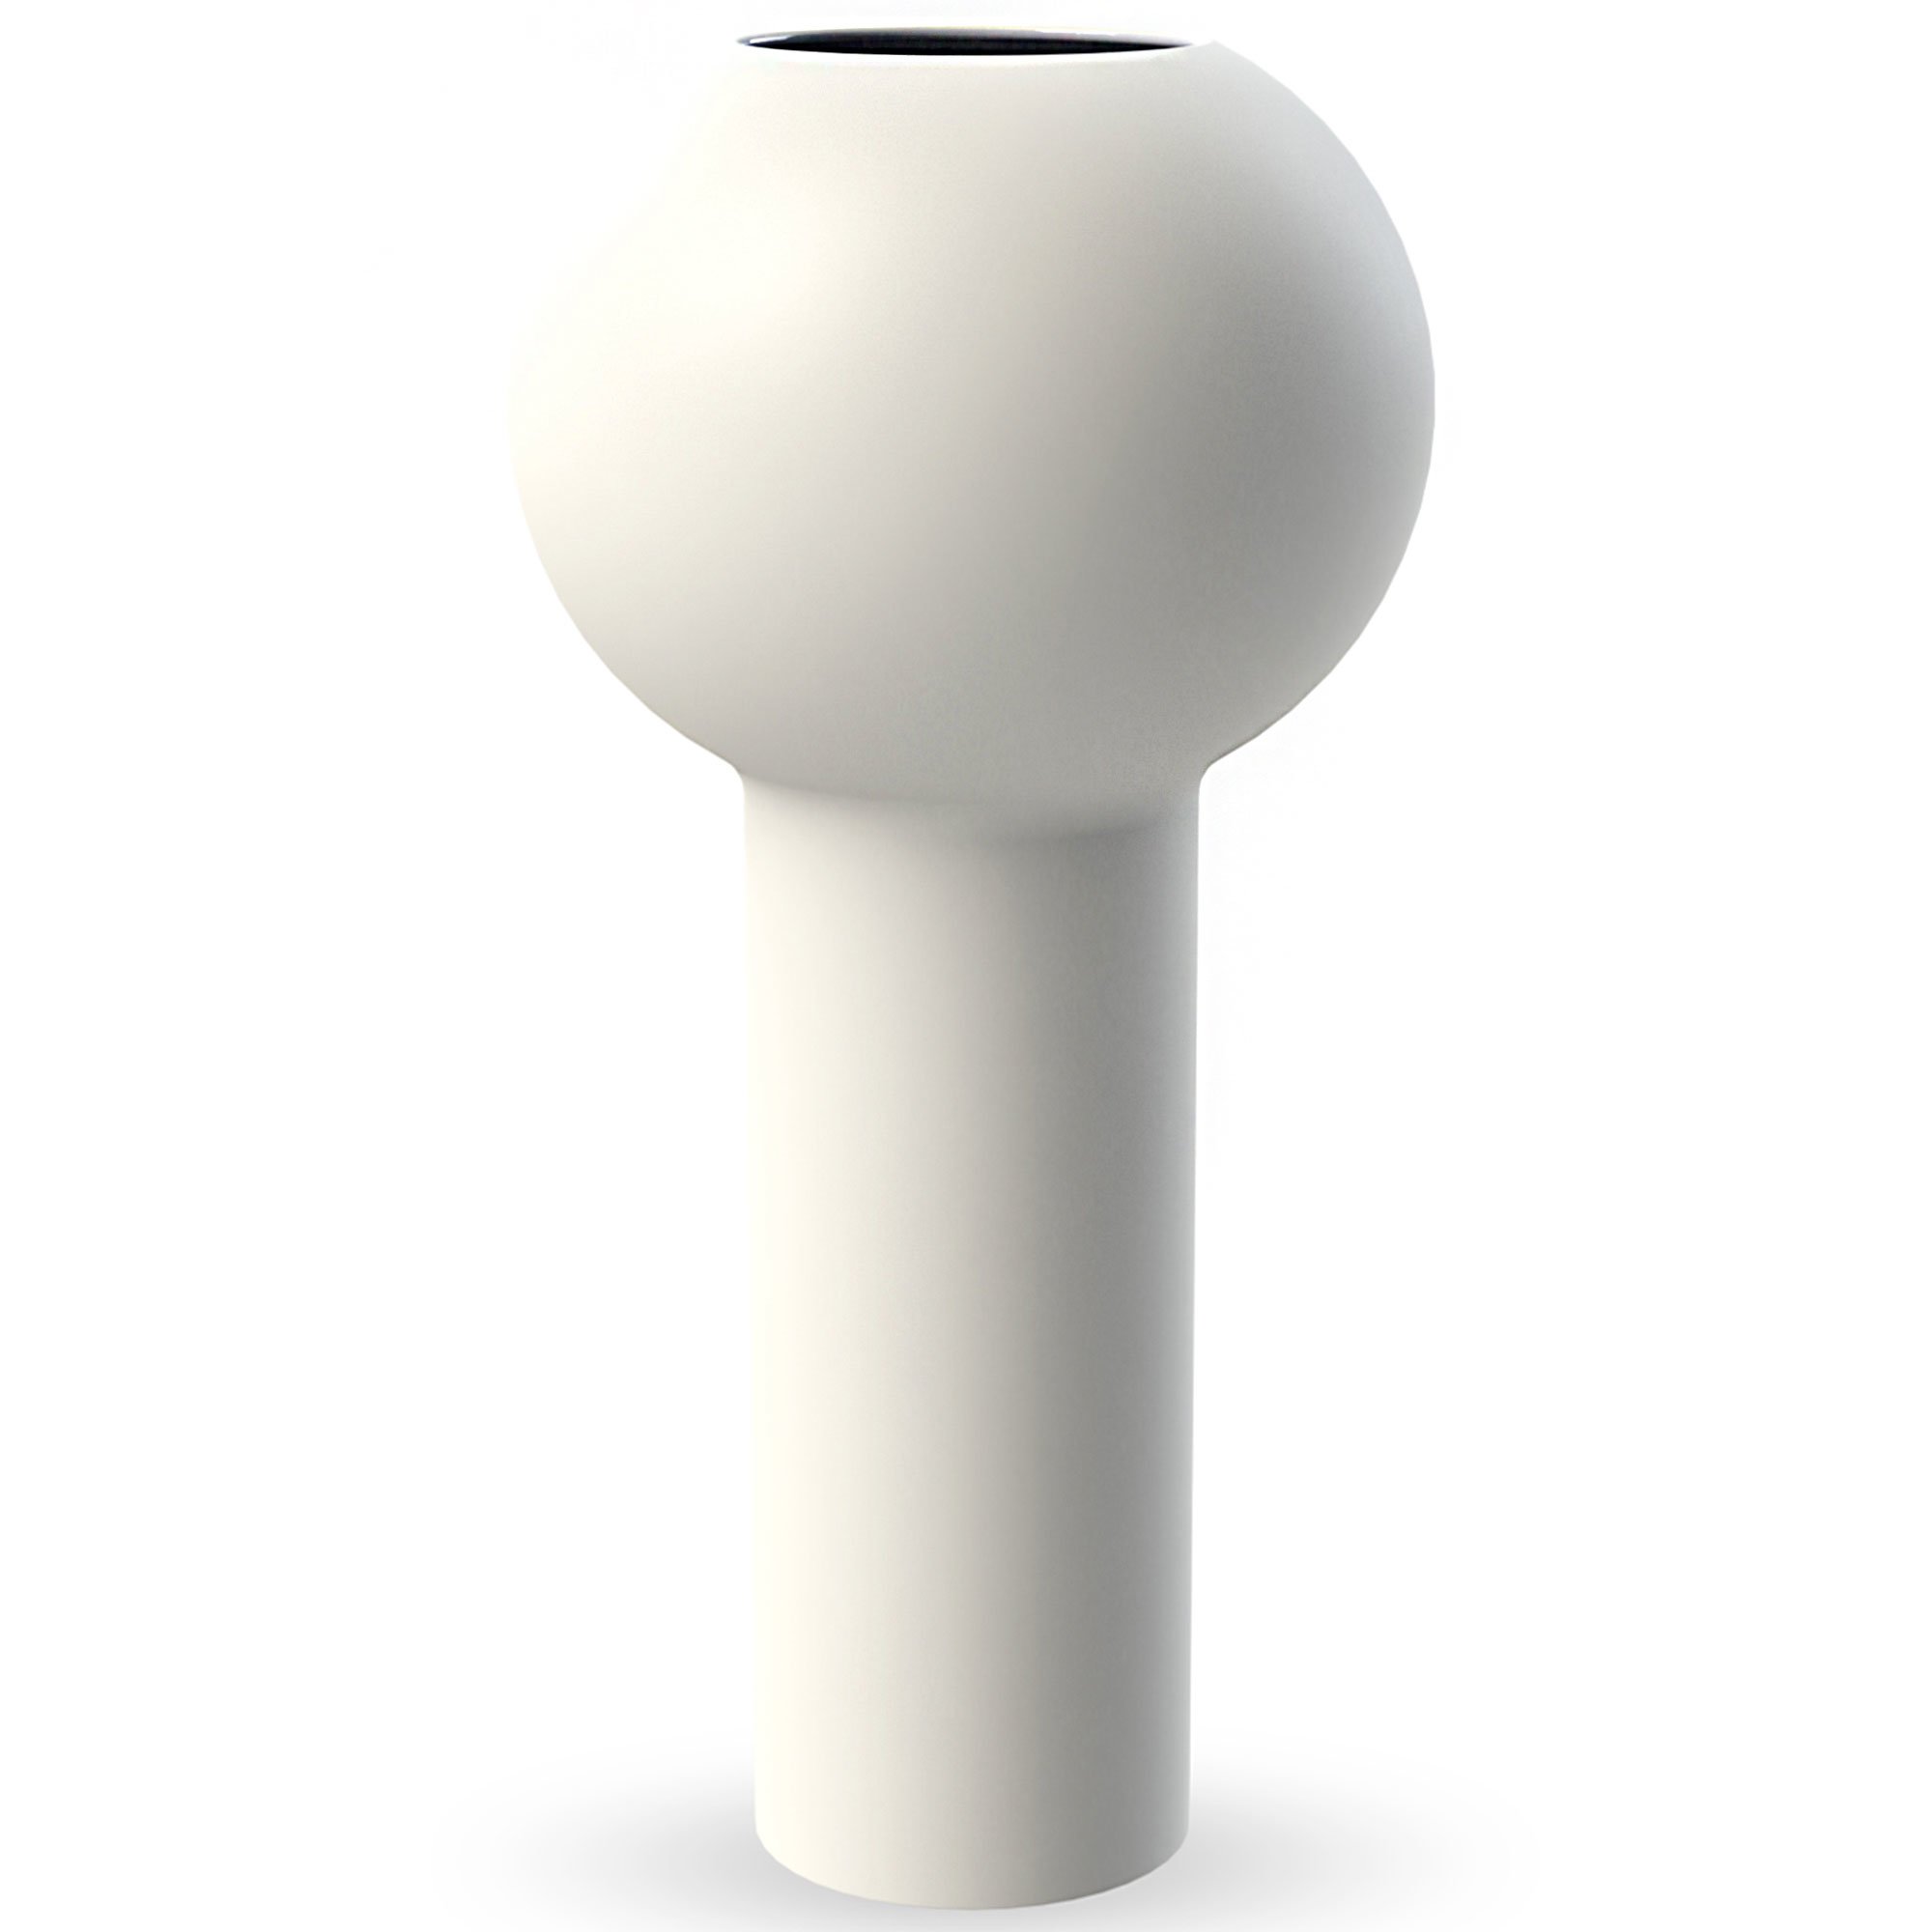 Cooee Design Pillar vas 32 cm white